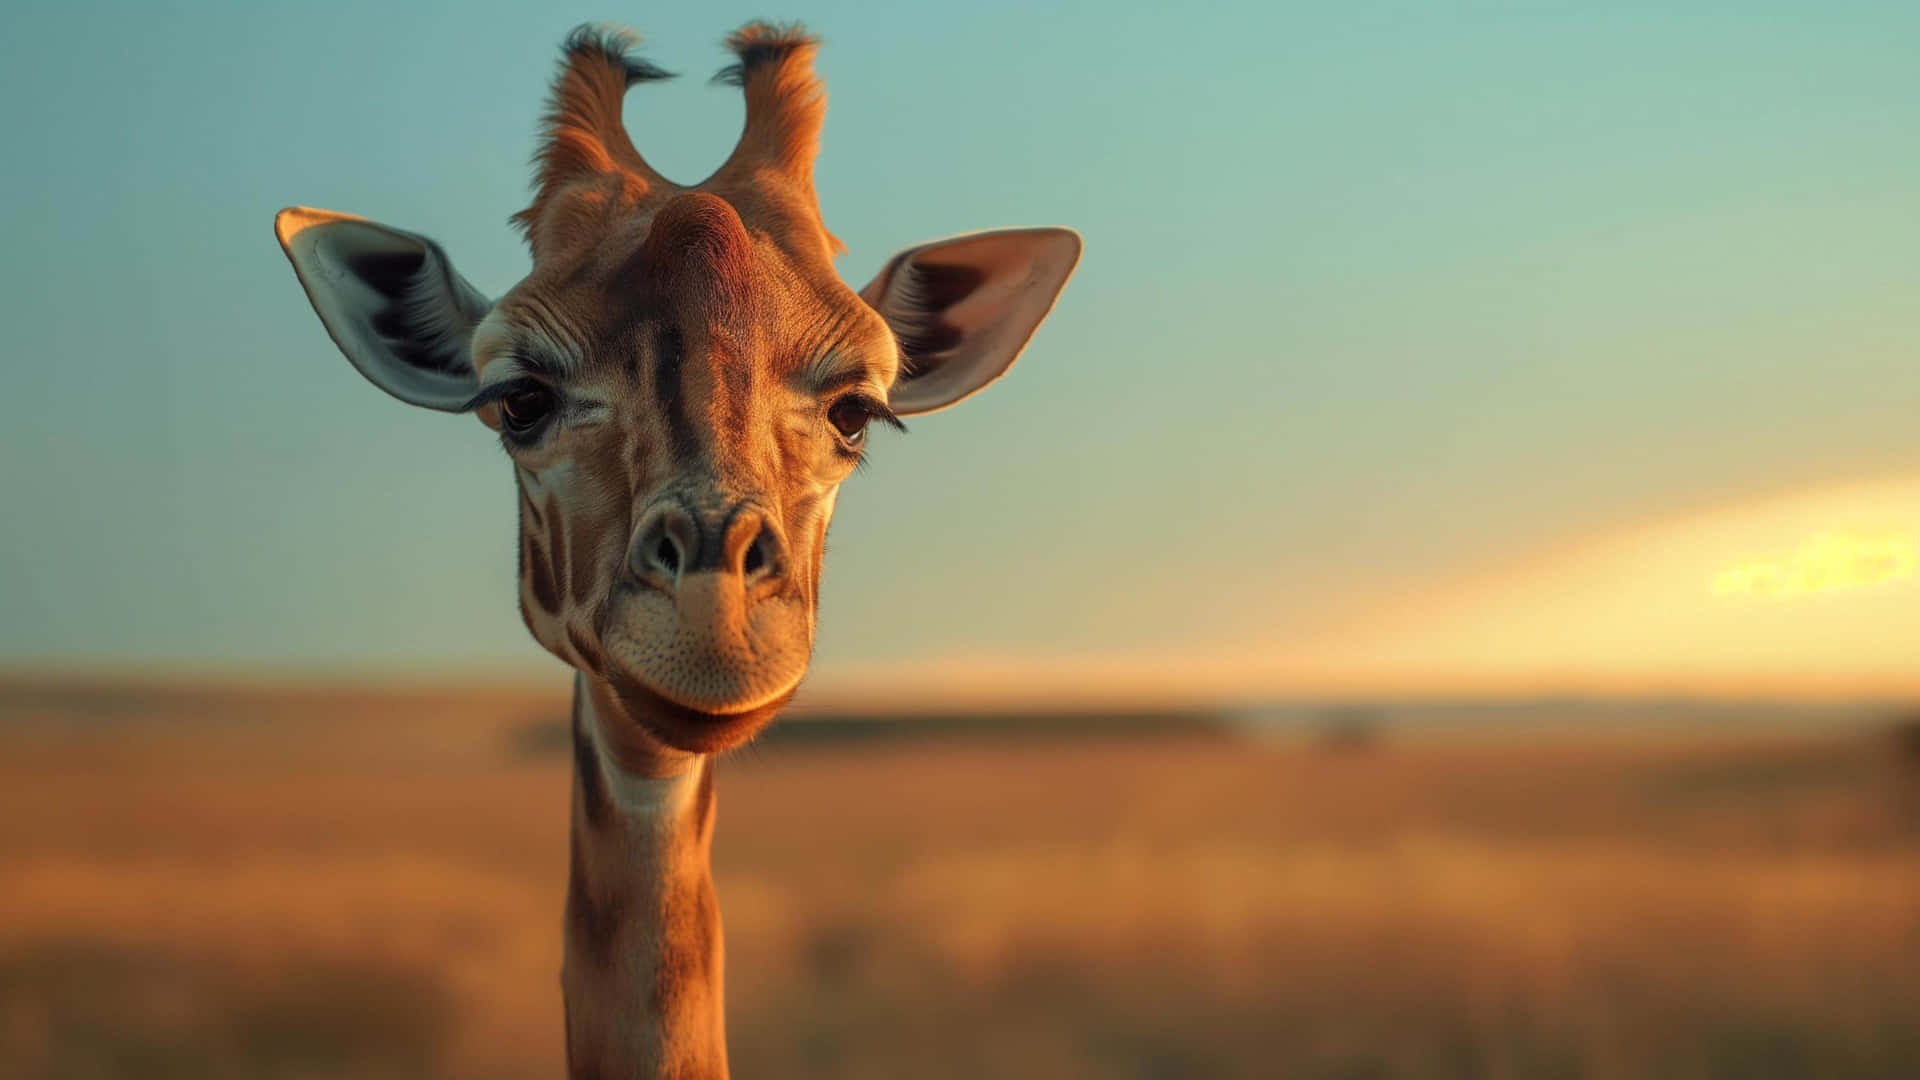 Giraffe Portraitat Sunset4 K Wildlife Wallpaper